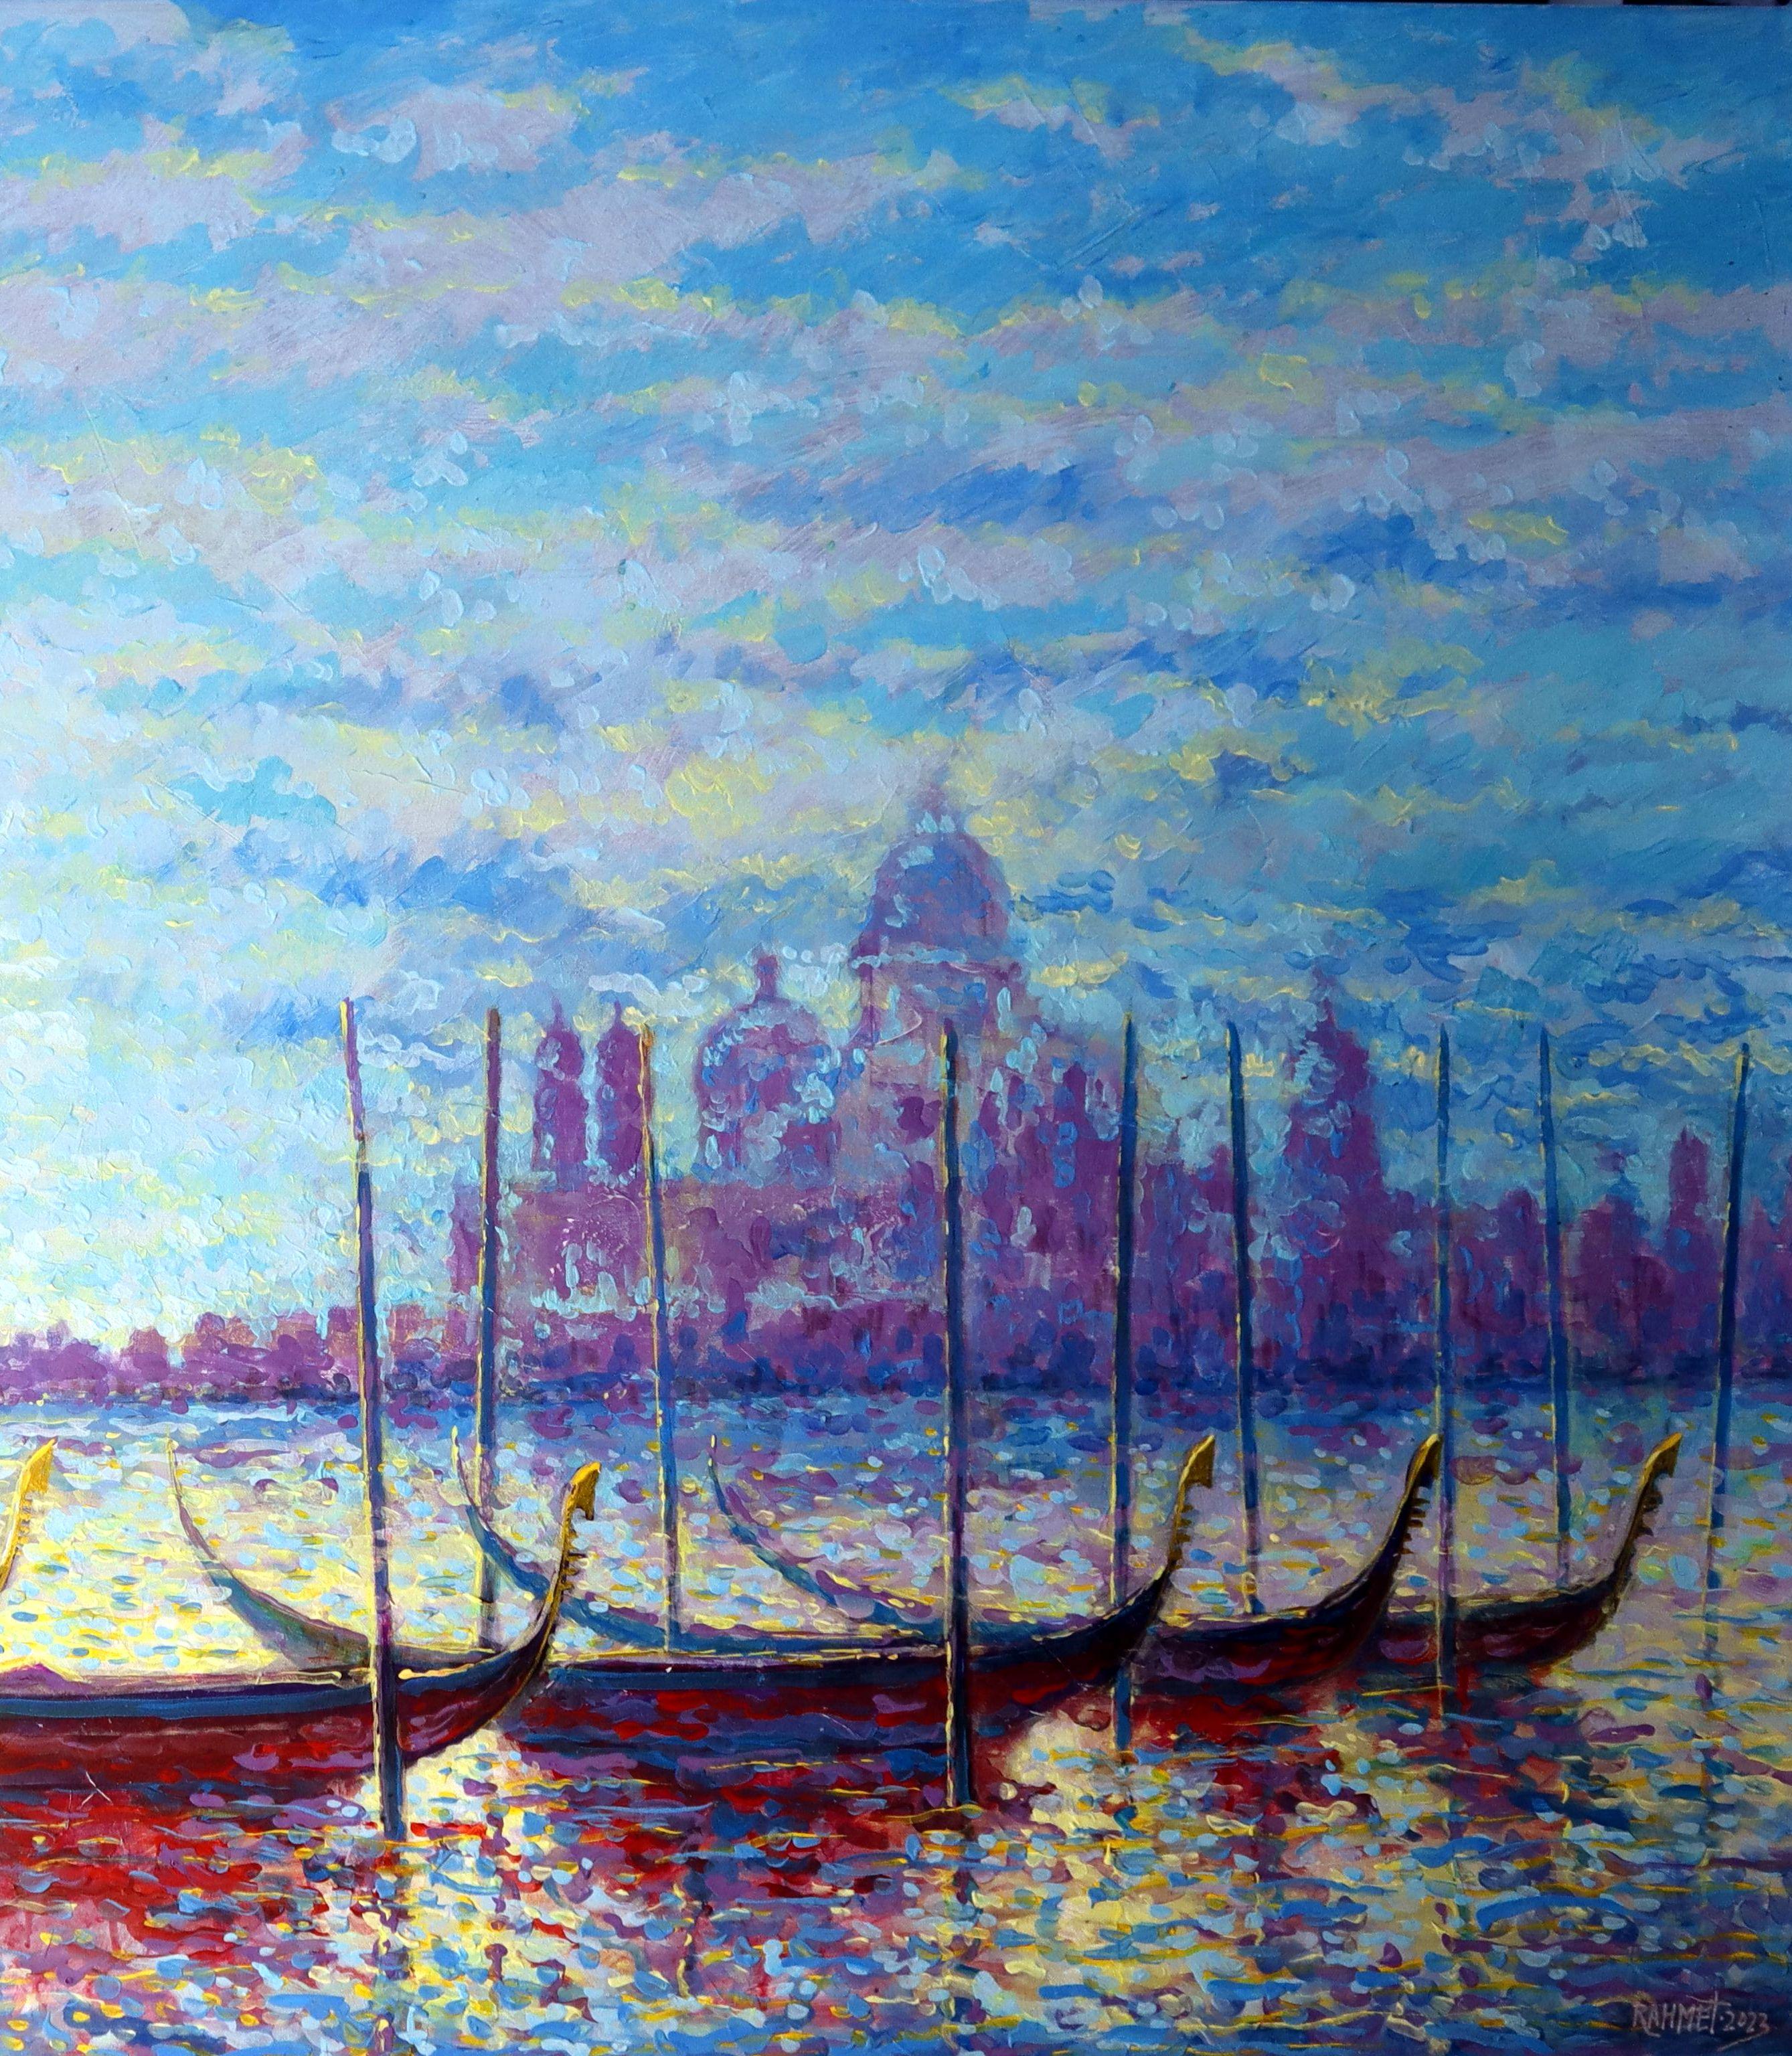 Venetian Serenity - Painting by RAKHMET REDZHEPOV (RAMZI)